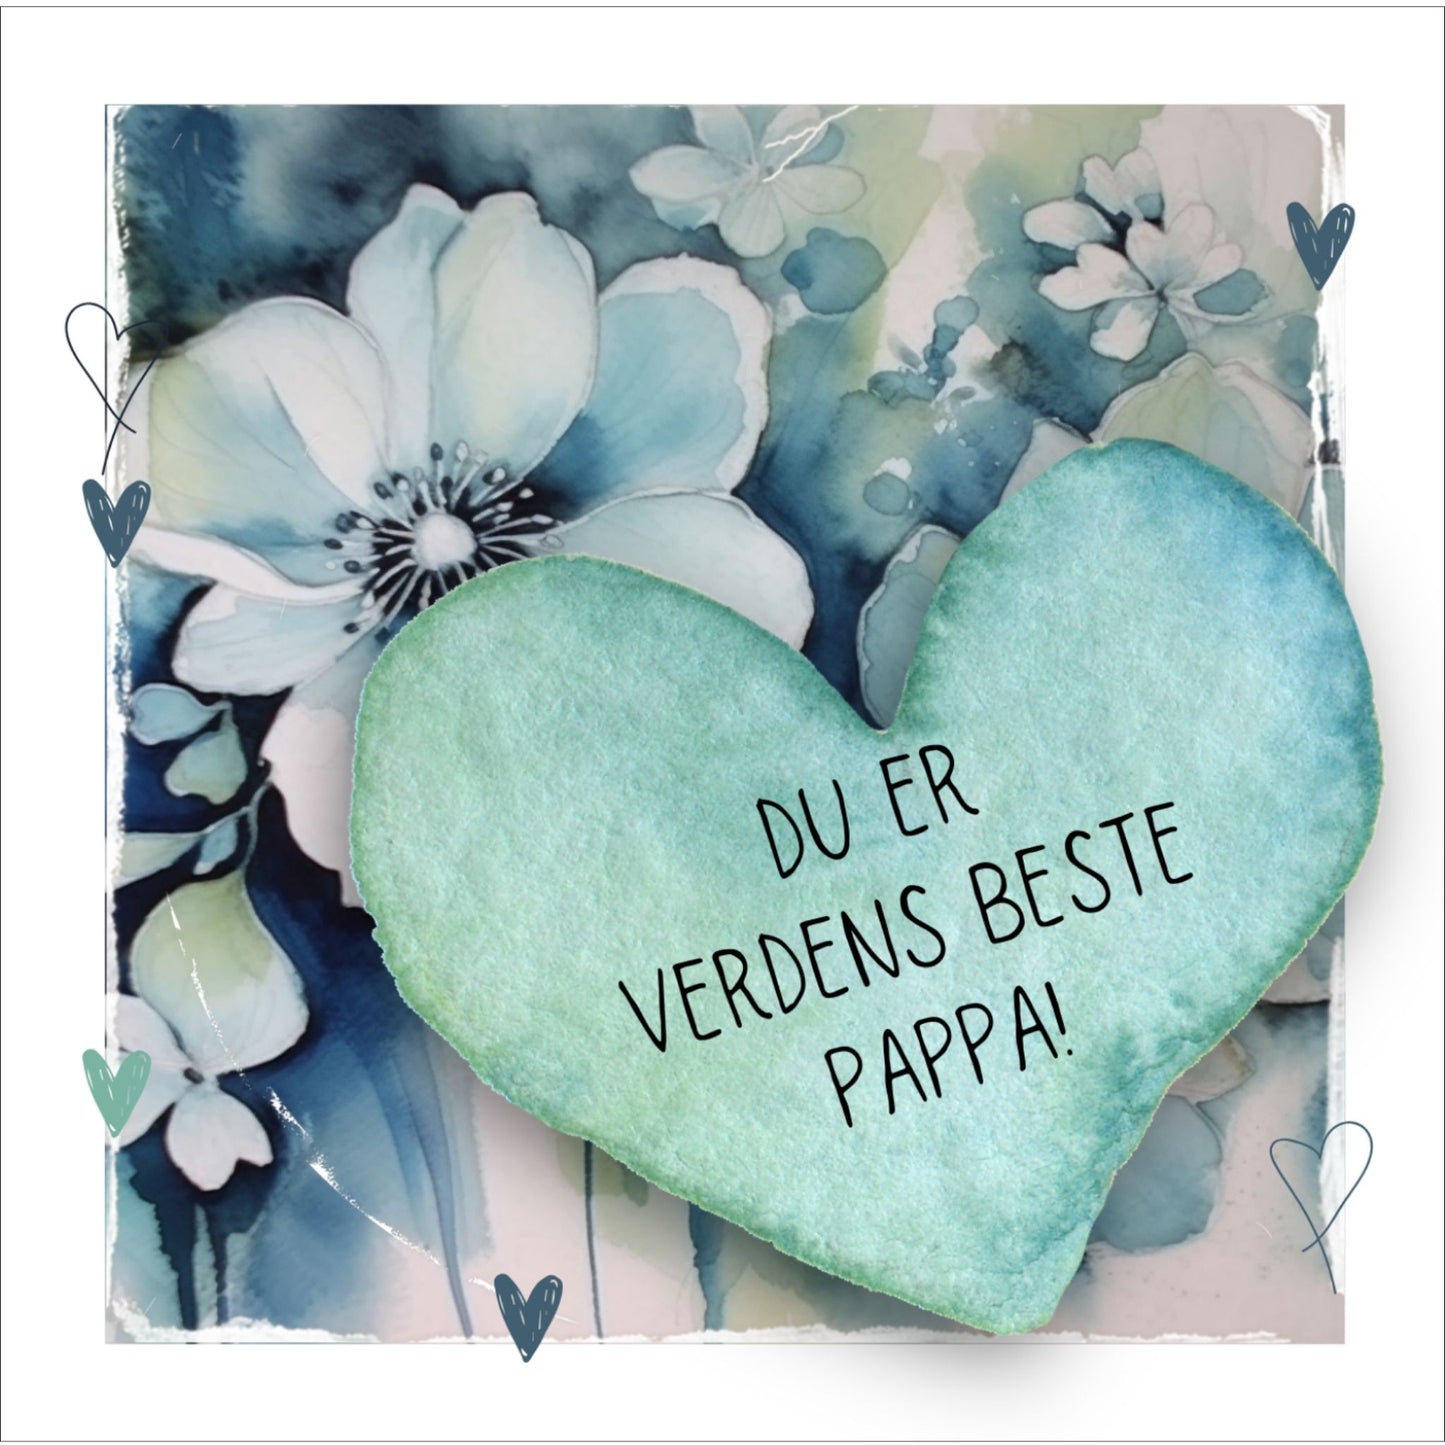 Grafisk plakat med et lyseblått hjerte påført tekst "Du er verdens beste pappa!". Bagrunn med blomster i blåtoner. Kortet har en hvit kant runt på 1,5 cm.